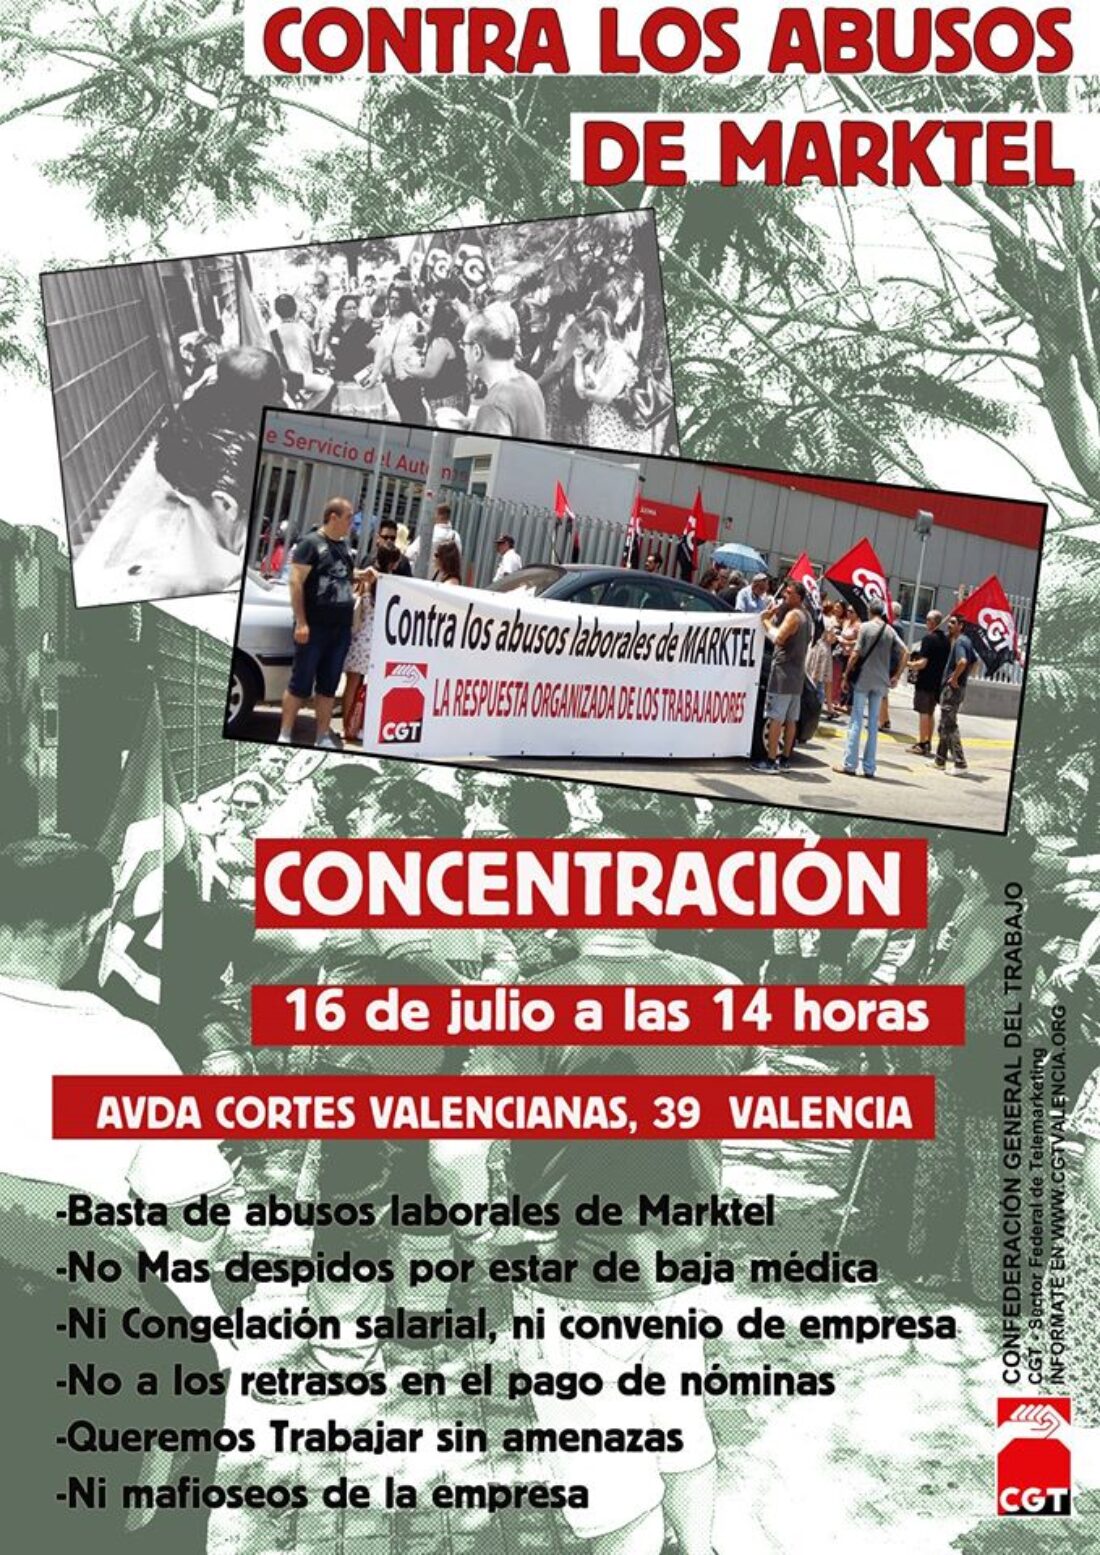 16 de julio: Volvemos a protestar contra la vulneracion de derechos de Marktel